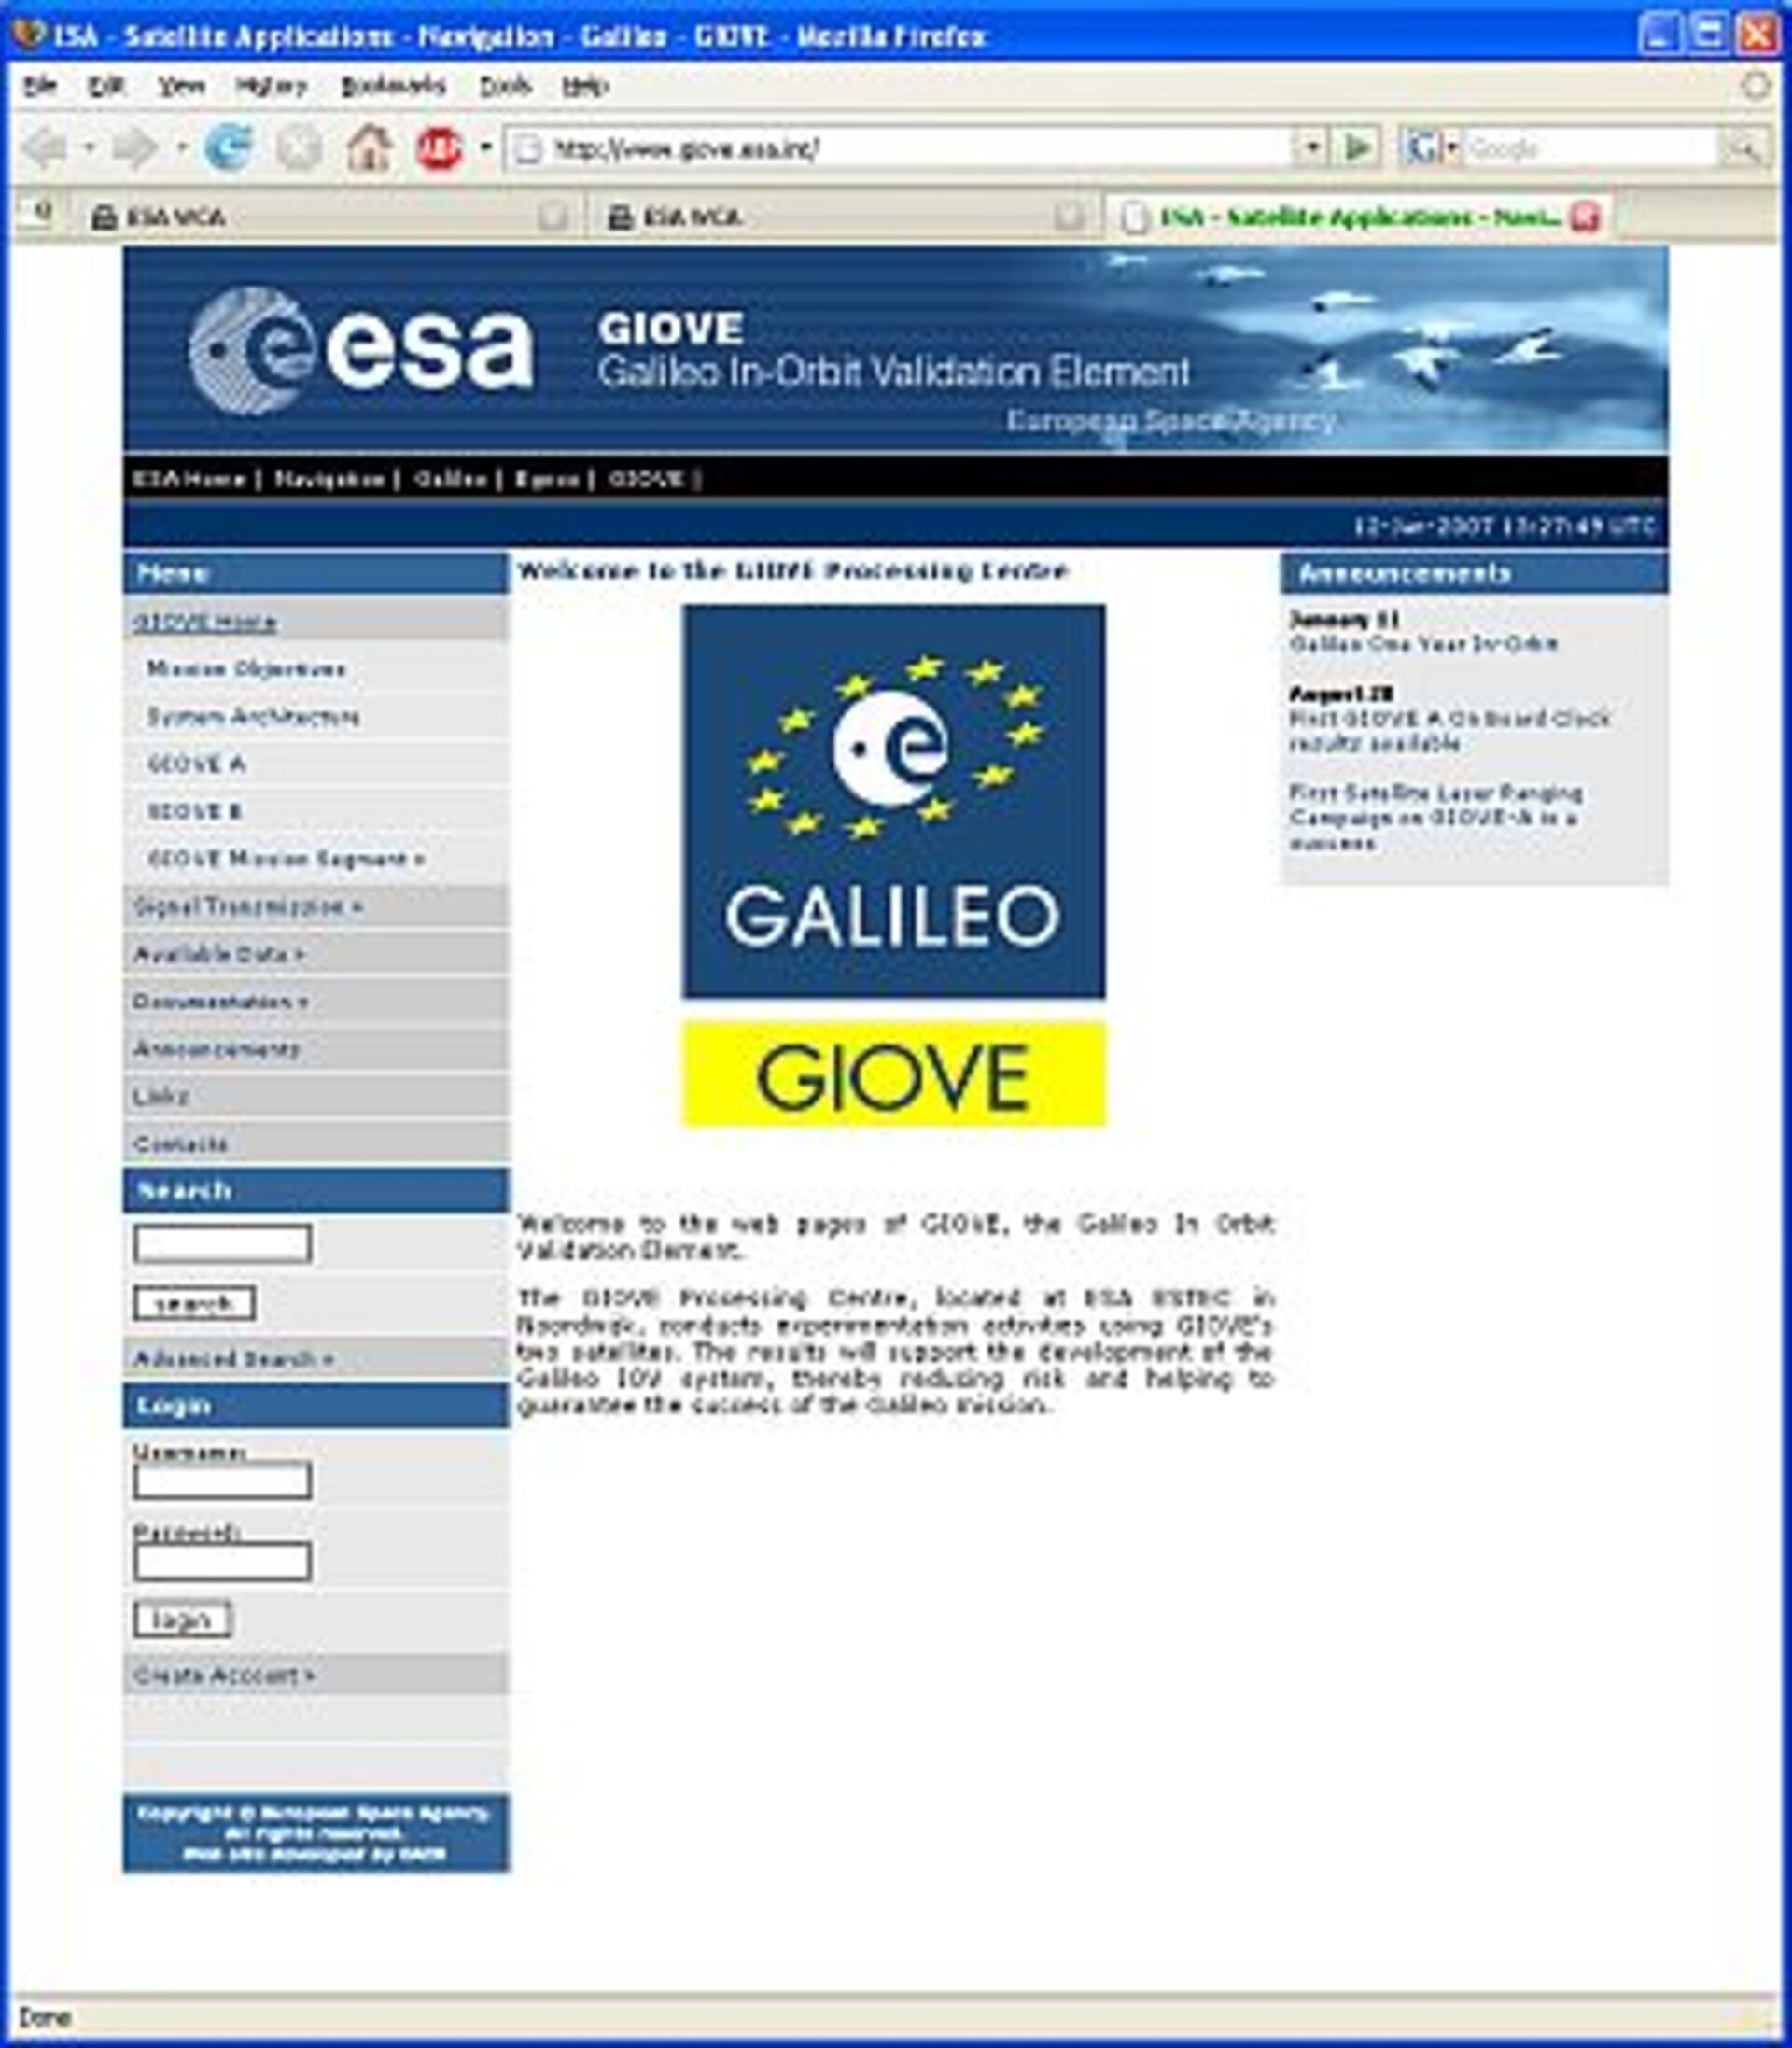 GIOVE web site